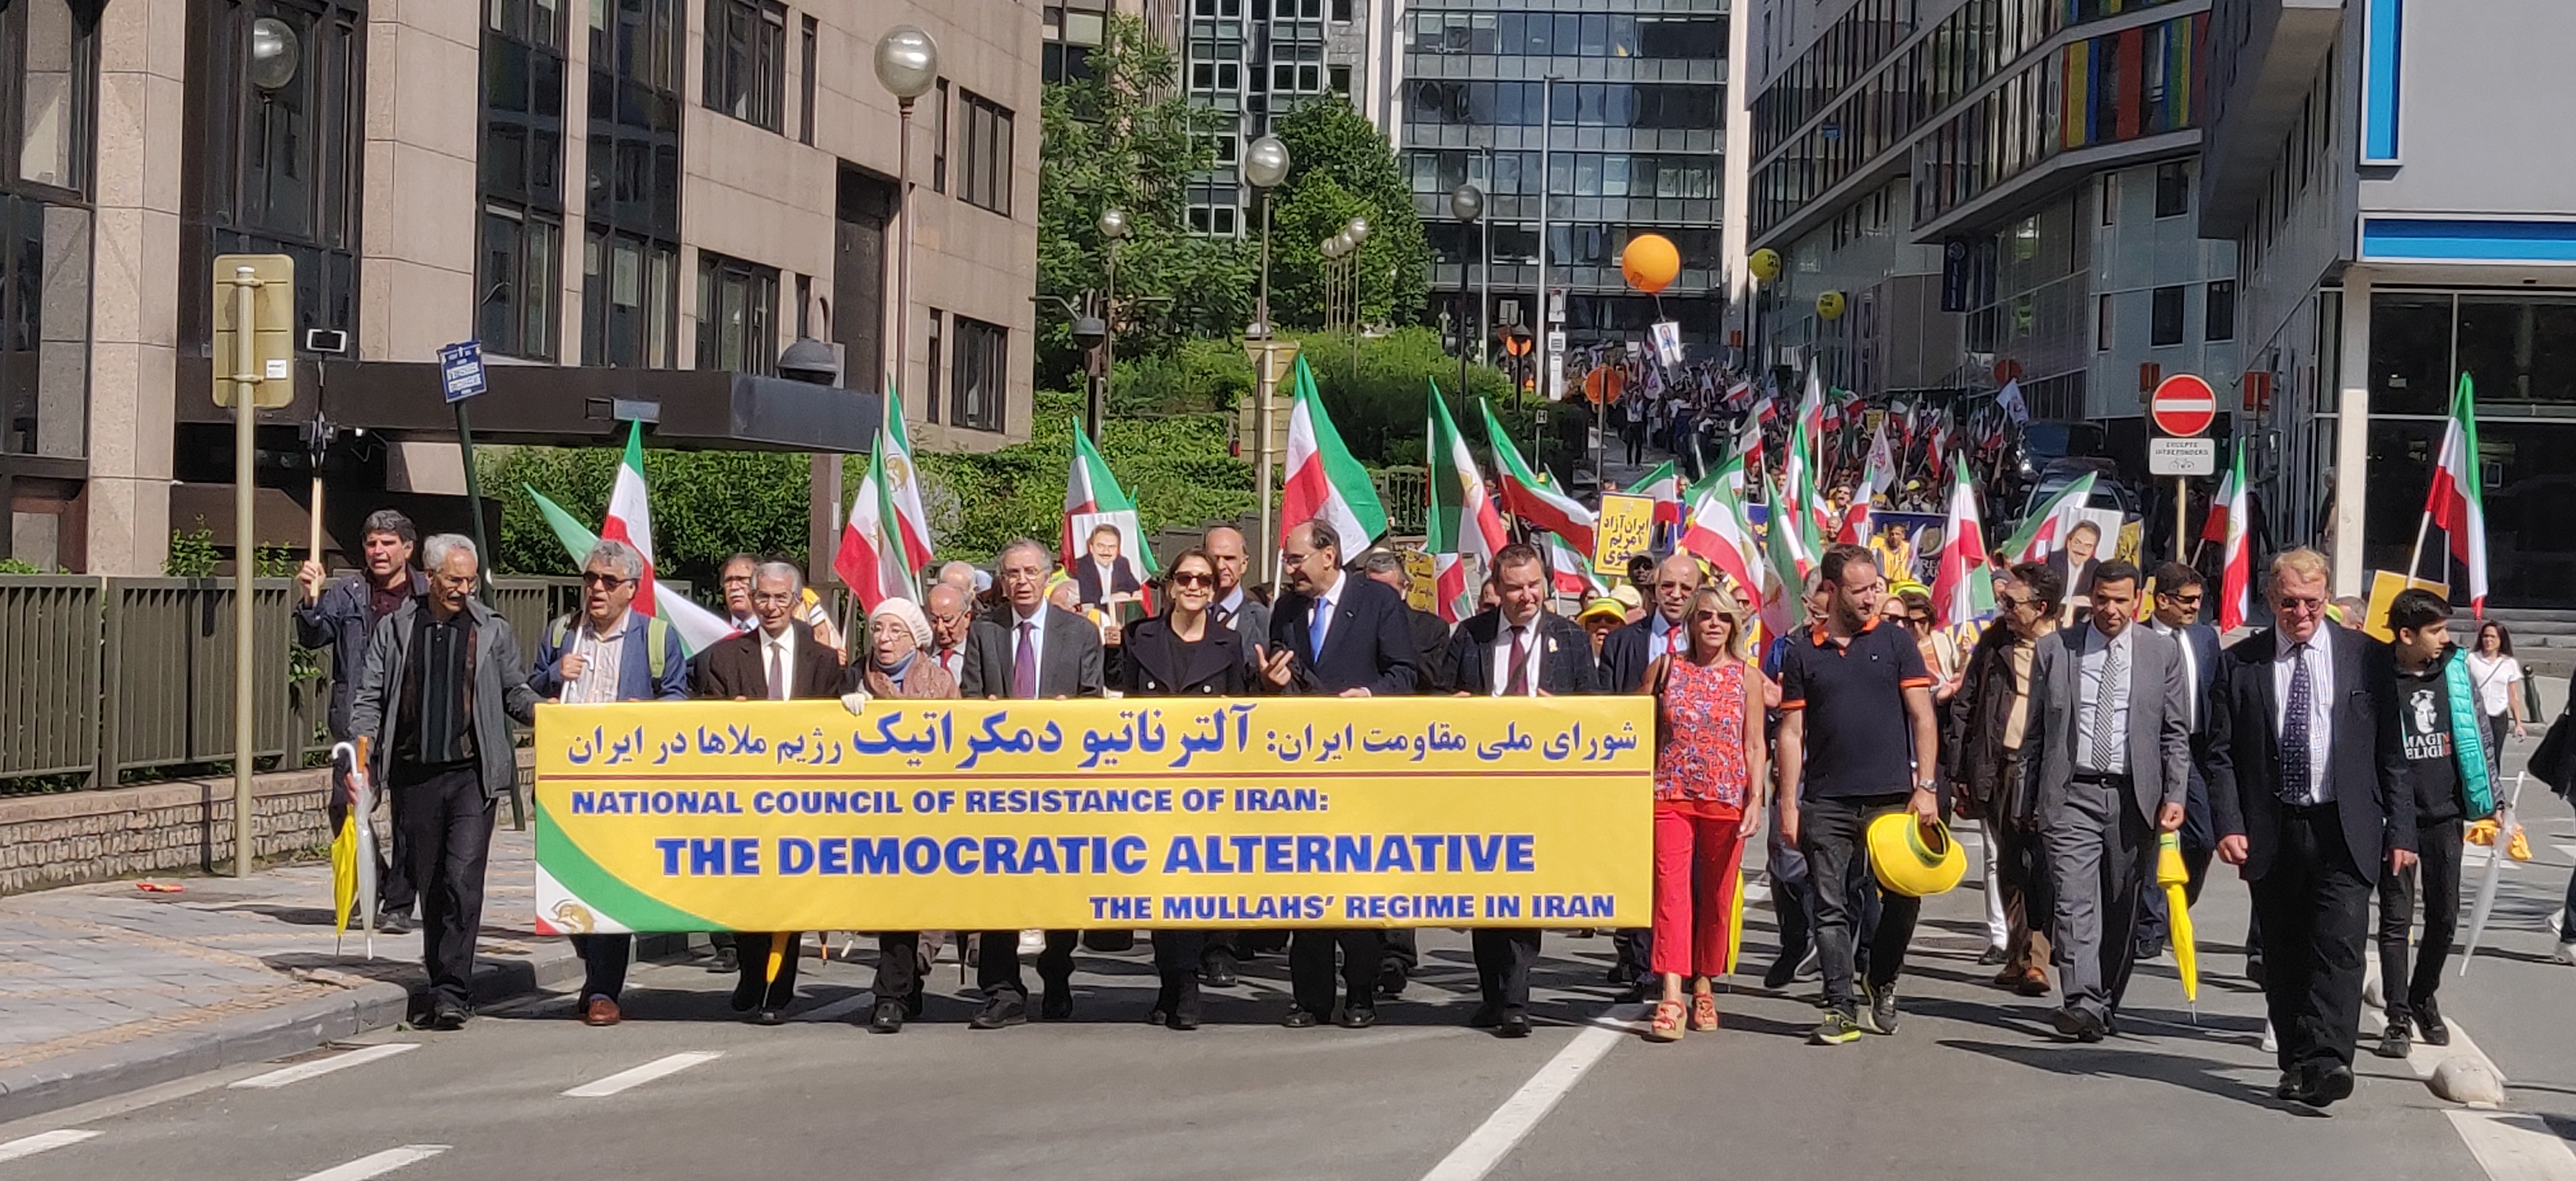 Protestmarsch i Bryssel mot iranska regimen, den 15 juni 2019